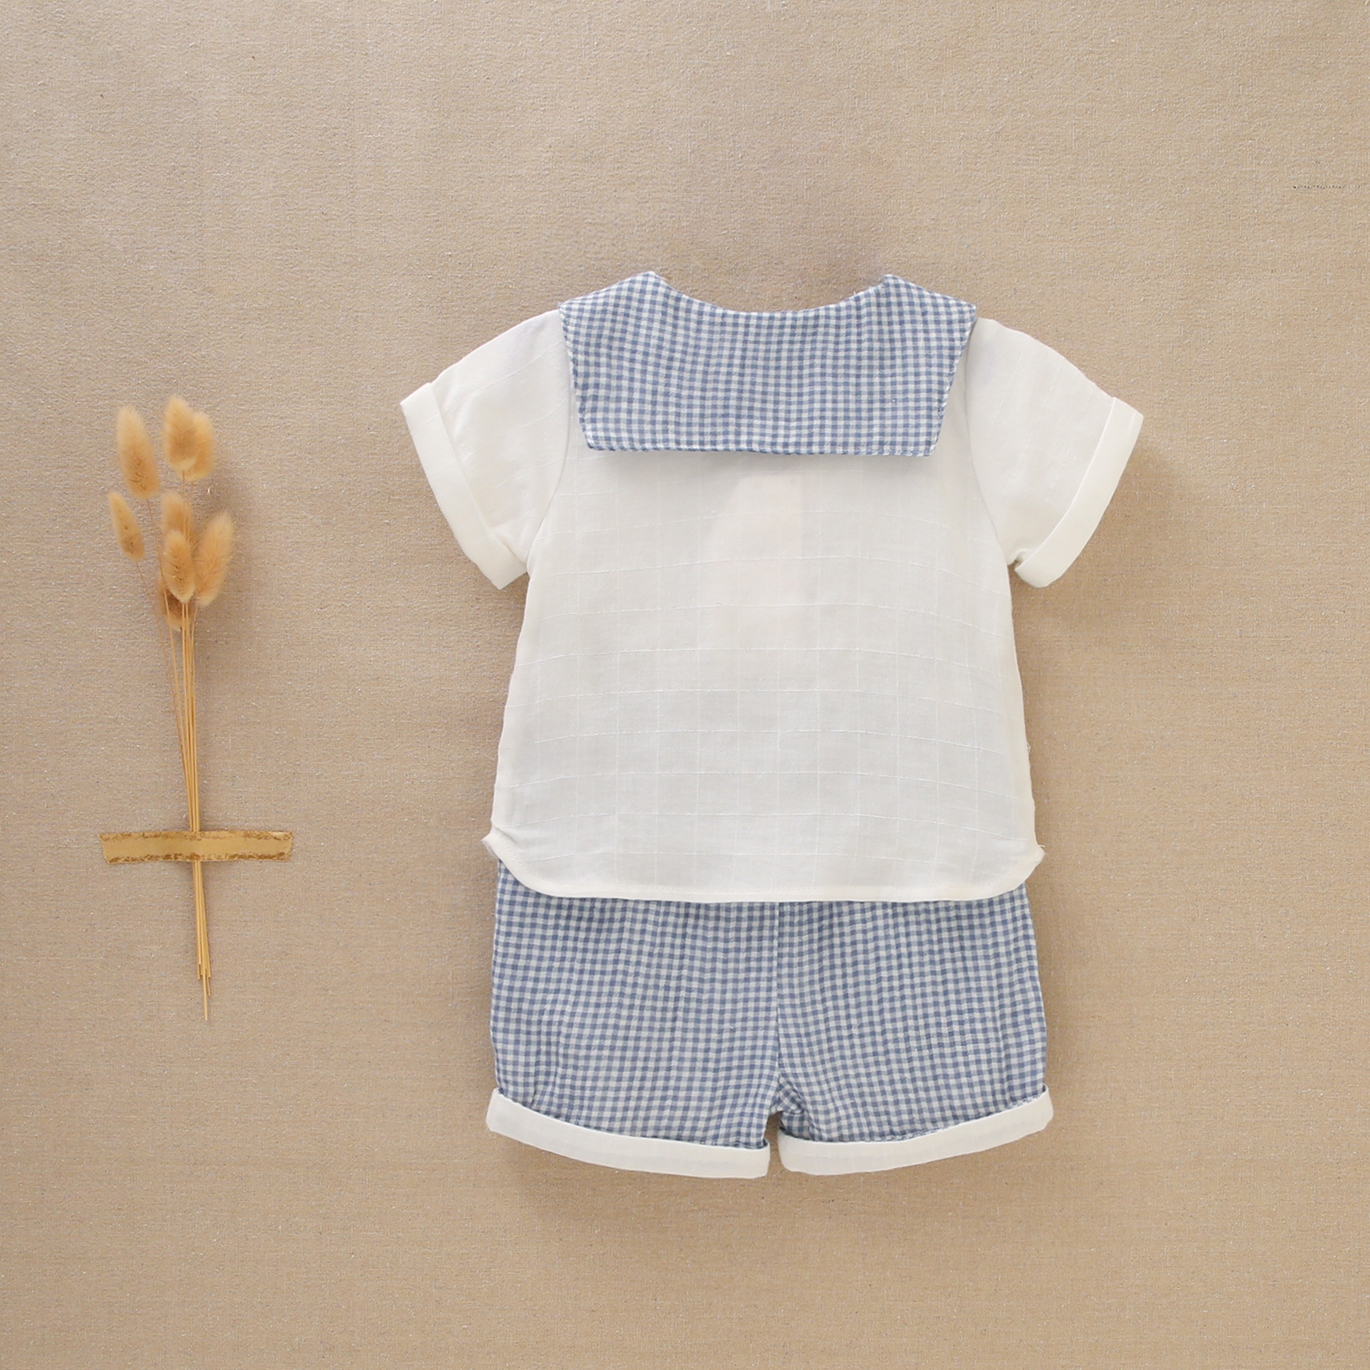 Imagen de Conjunto de bebé niño con camisa blanca y pantalón de cuadros vichy azules y blancos